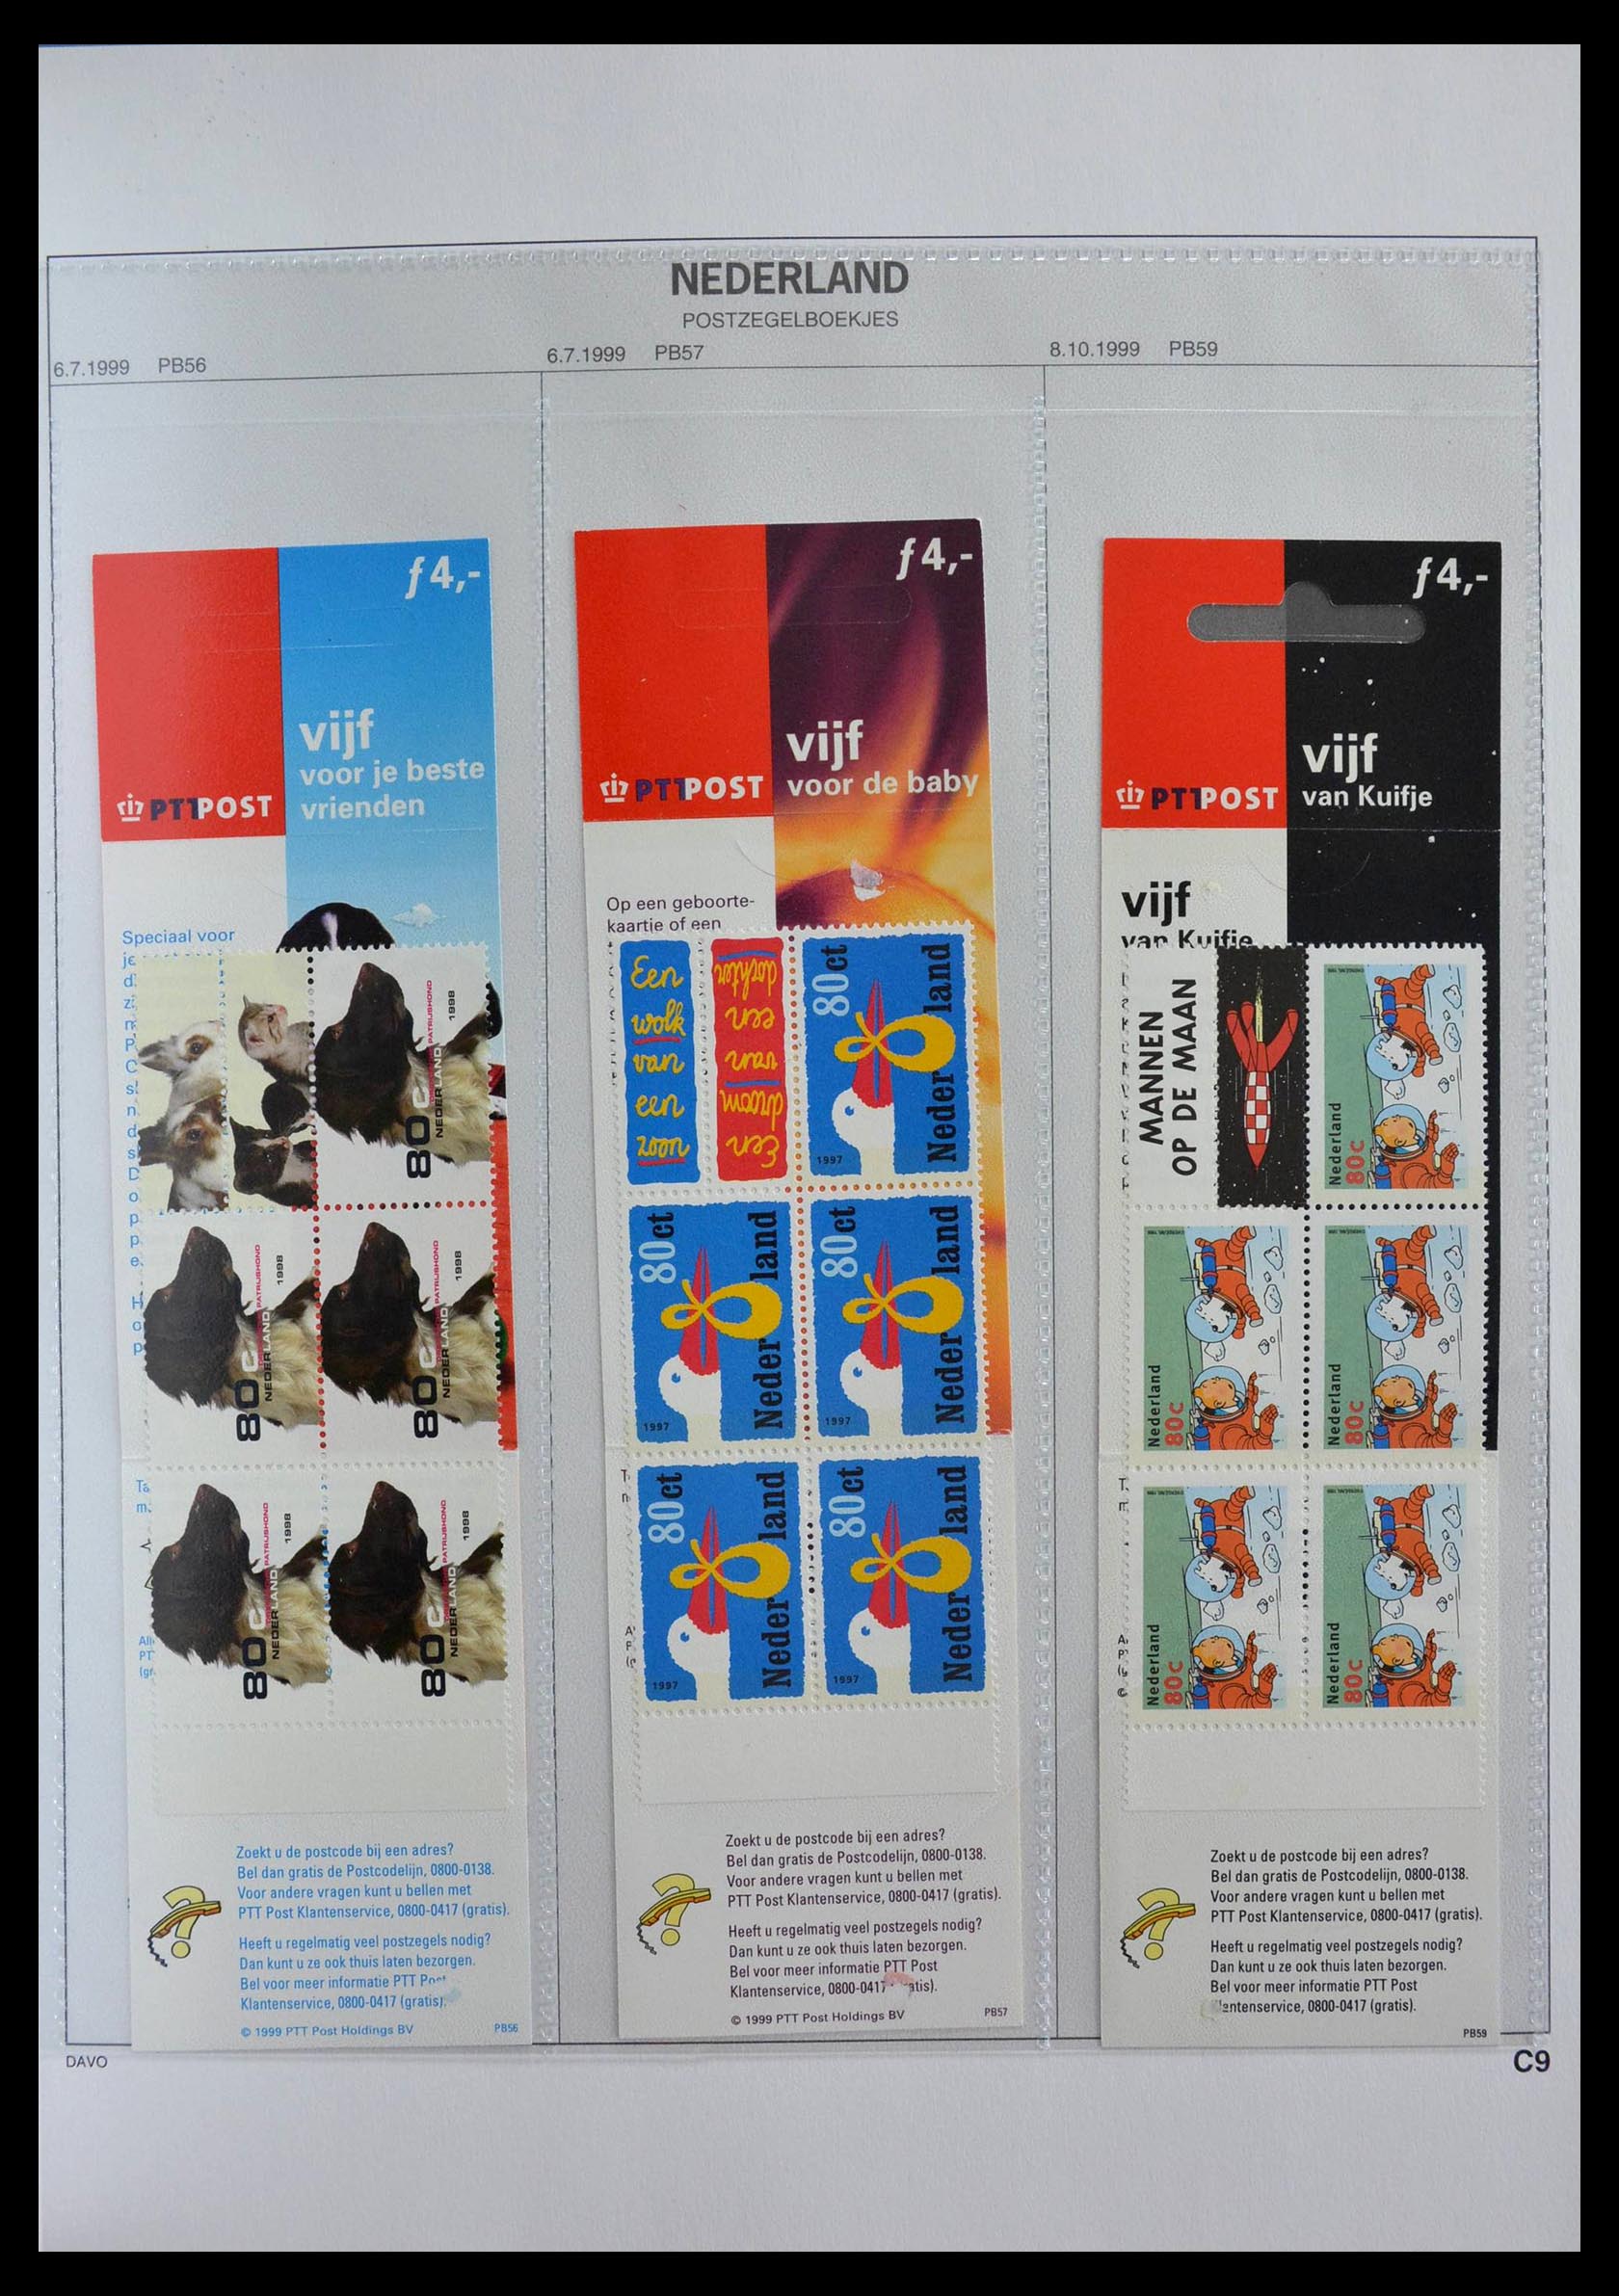 28853 030 - 28853 Netherlands stampbooklets 1964-2005.